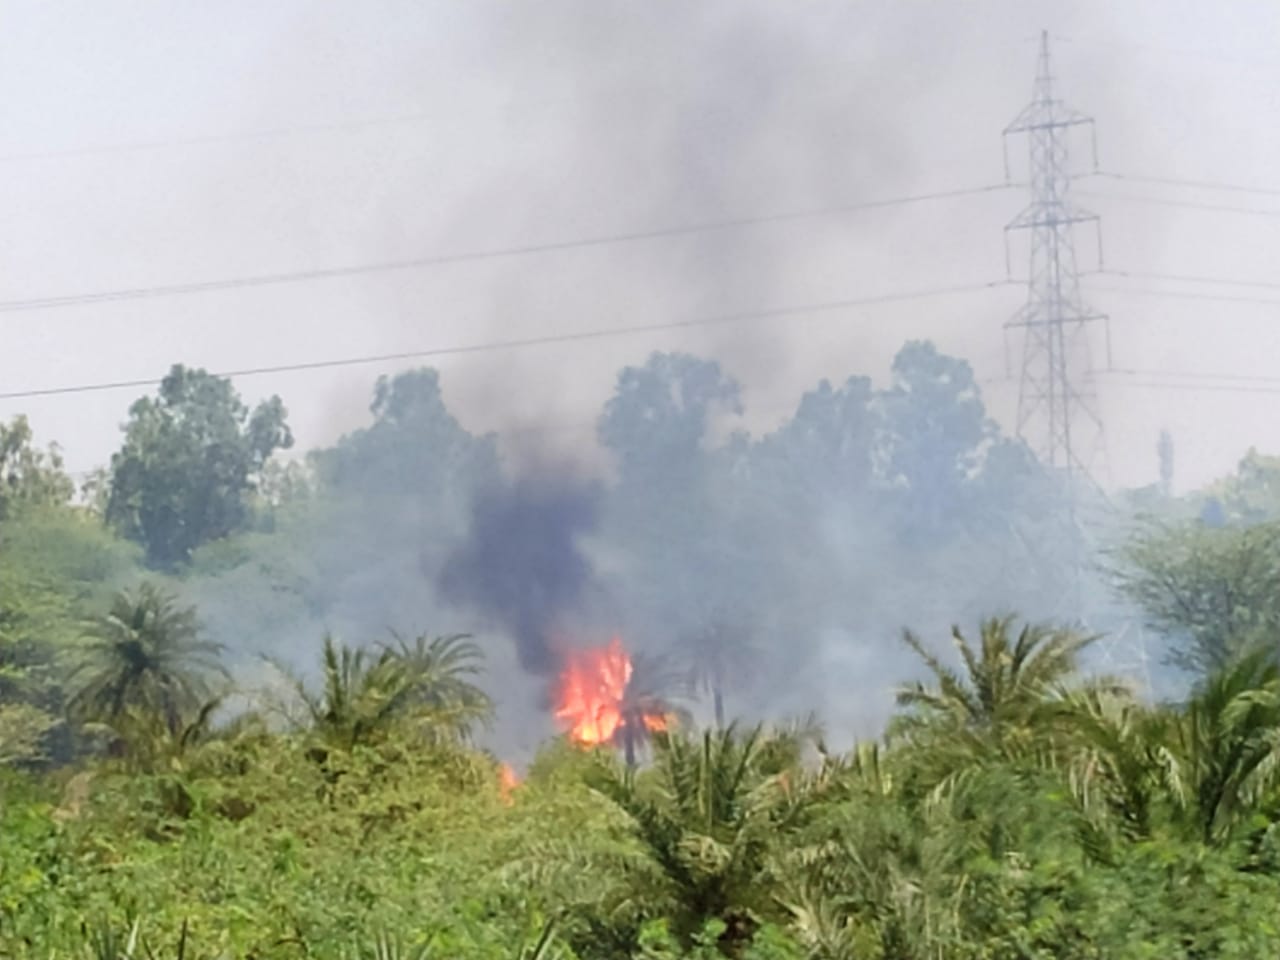 कासना थाना अंतर्गत गामा फर्स्ट के आशियाना सोसाइटी के पीछे सटे जंगल में लगी आग